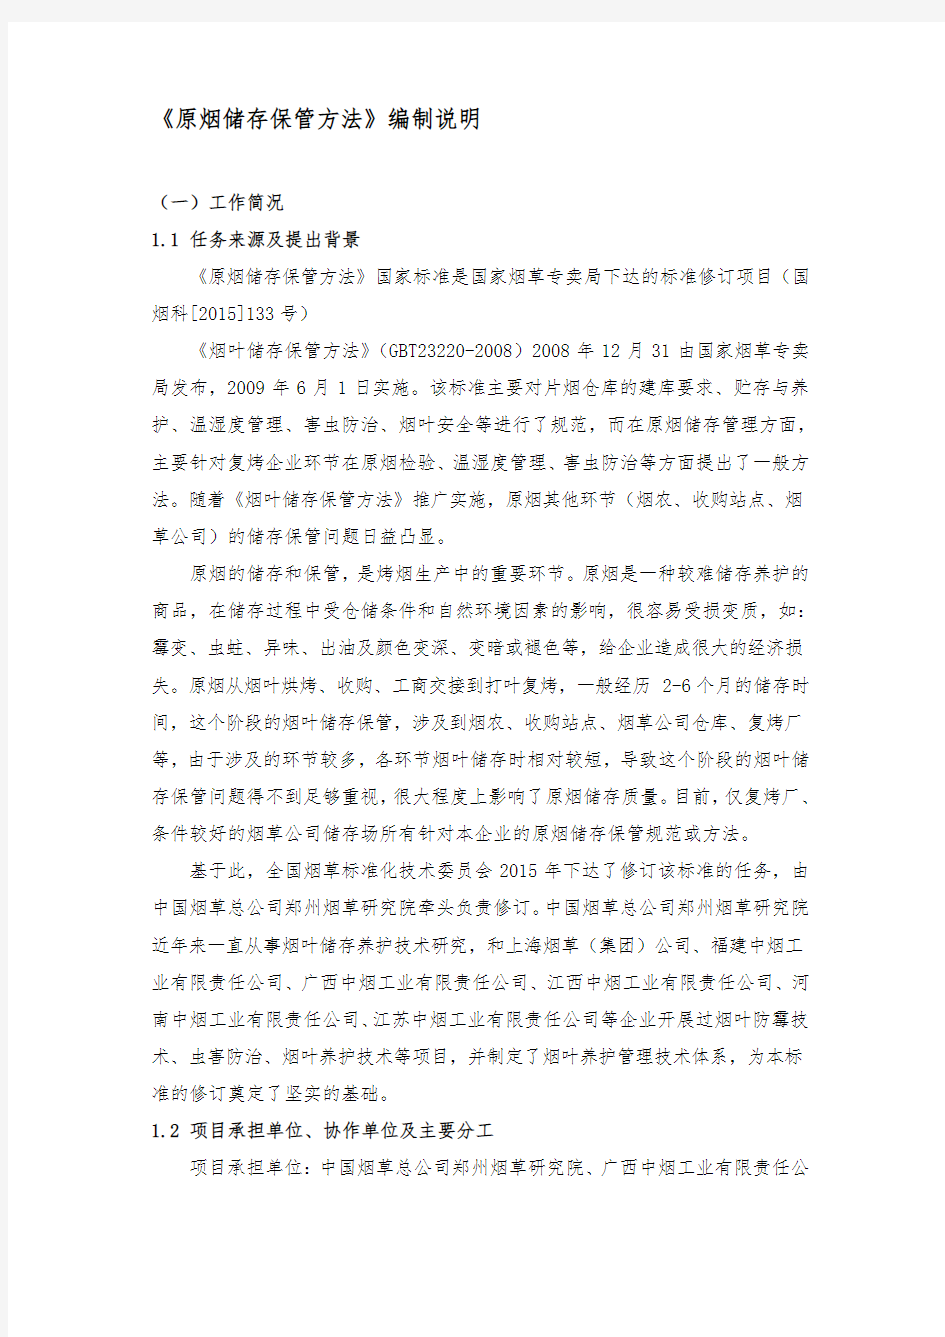 原烟储存保管方法编制说明-中国烟草标准化资料